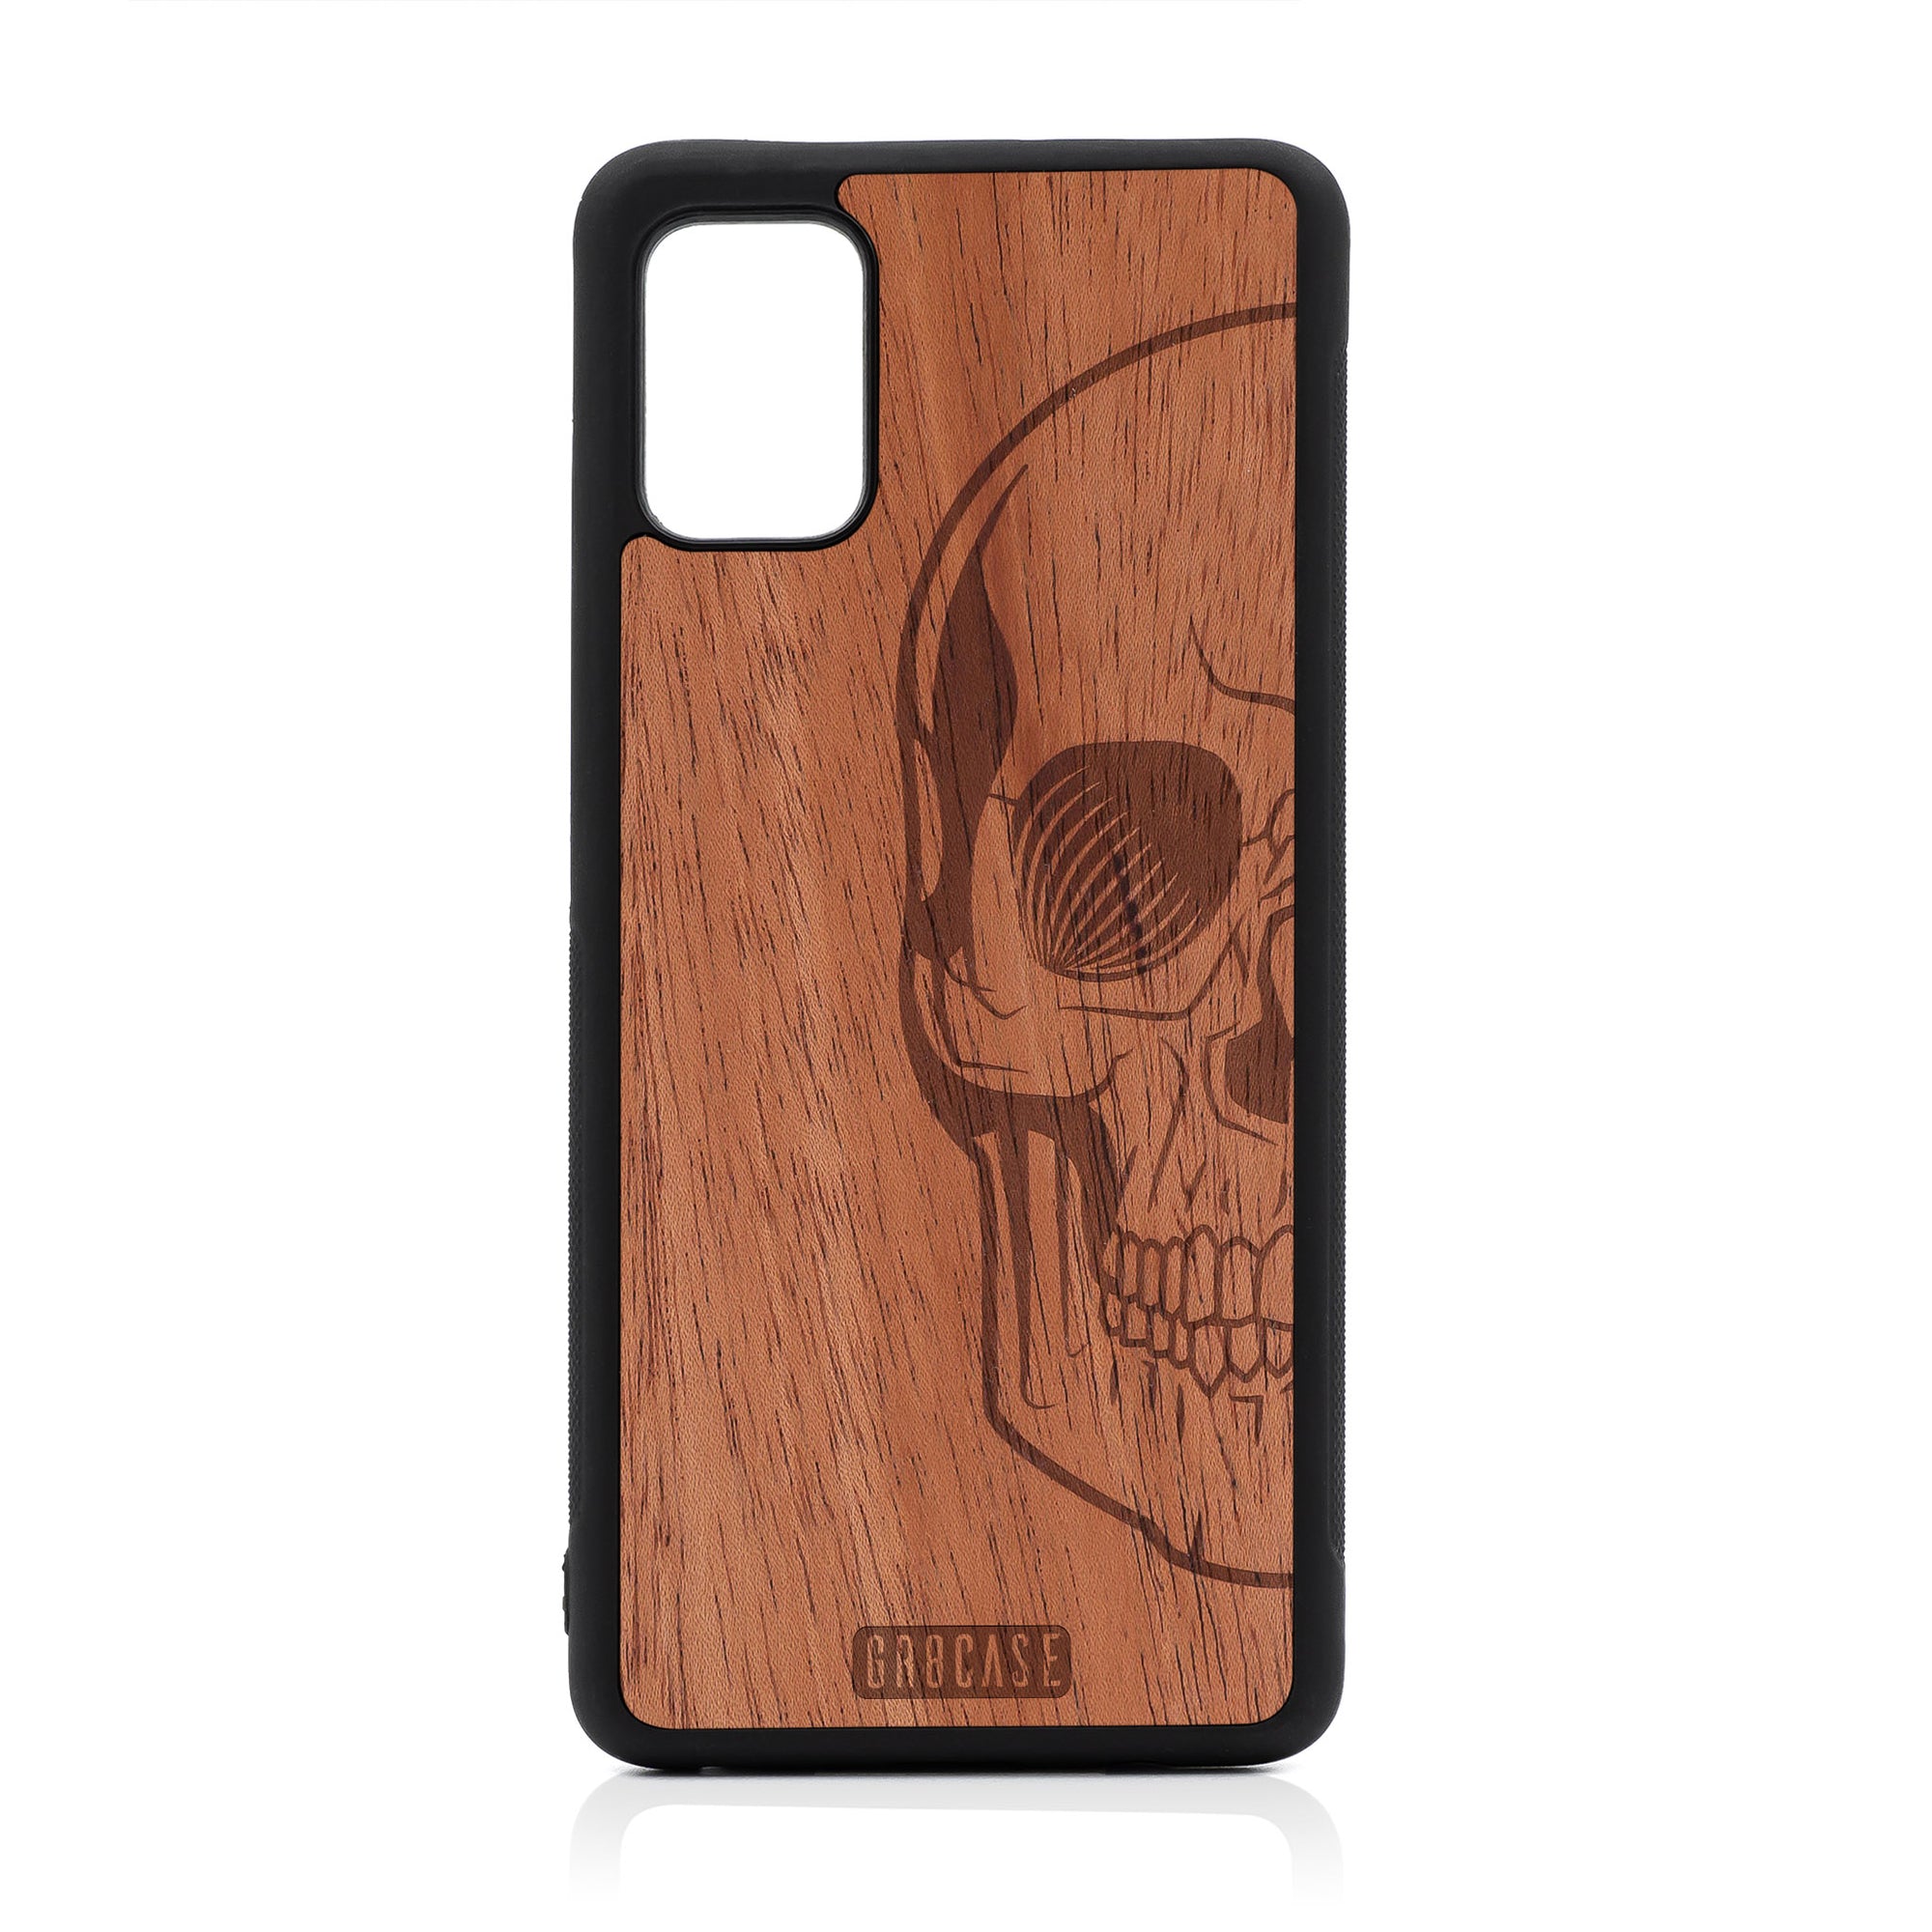 Half Skull Design Wood Case For Samsung Galaxy A51